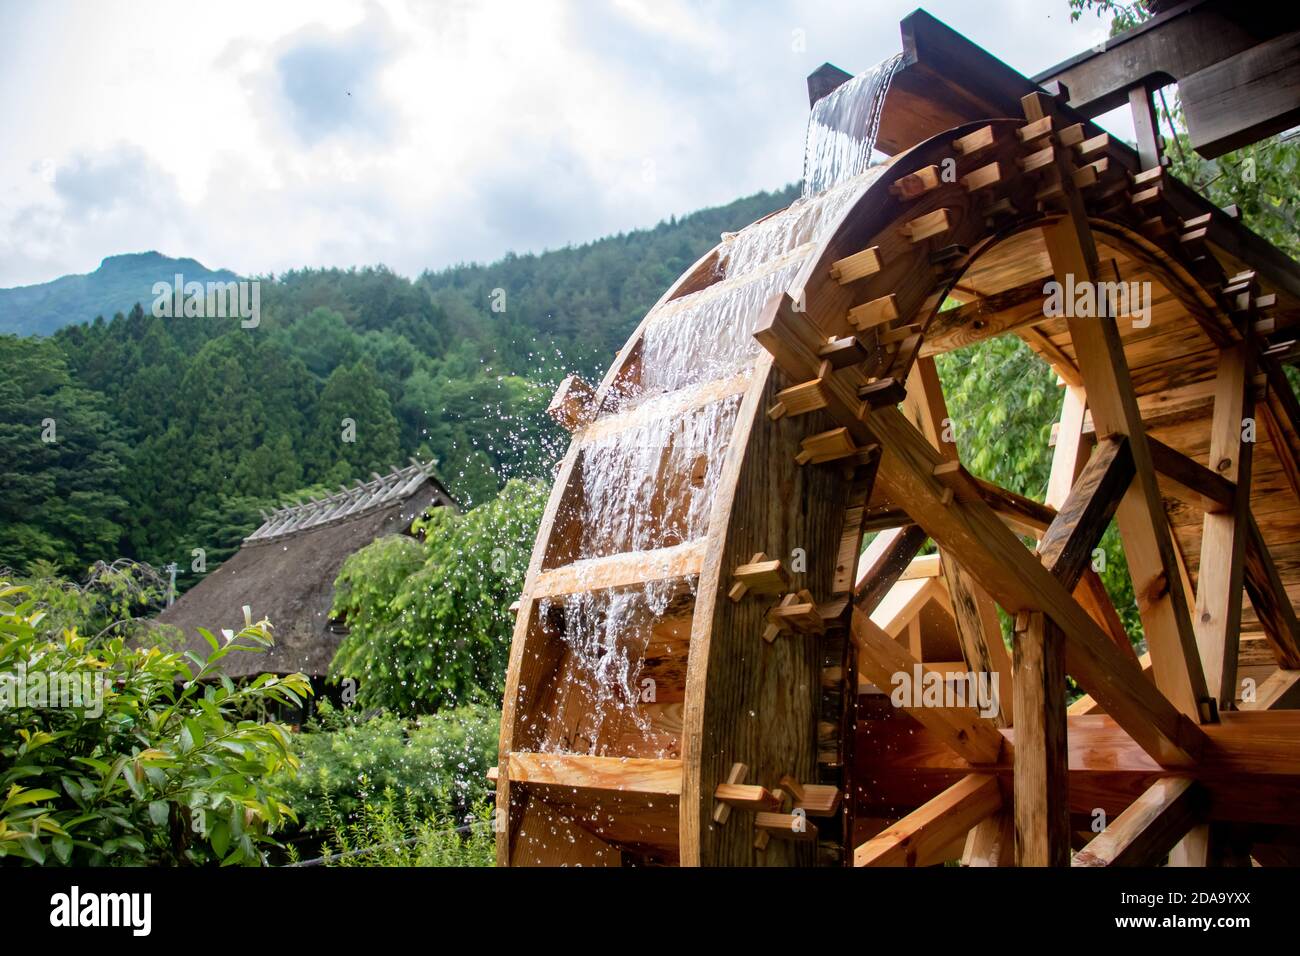 Das Mühlrad dreht sich unter einem Strom von Wasser, das Open Air Museum im Dorf mit traditionellen Reetdach Häusern Stockfoto